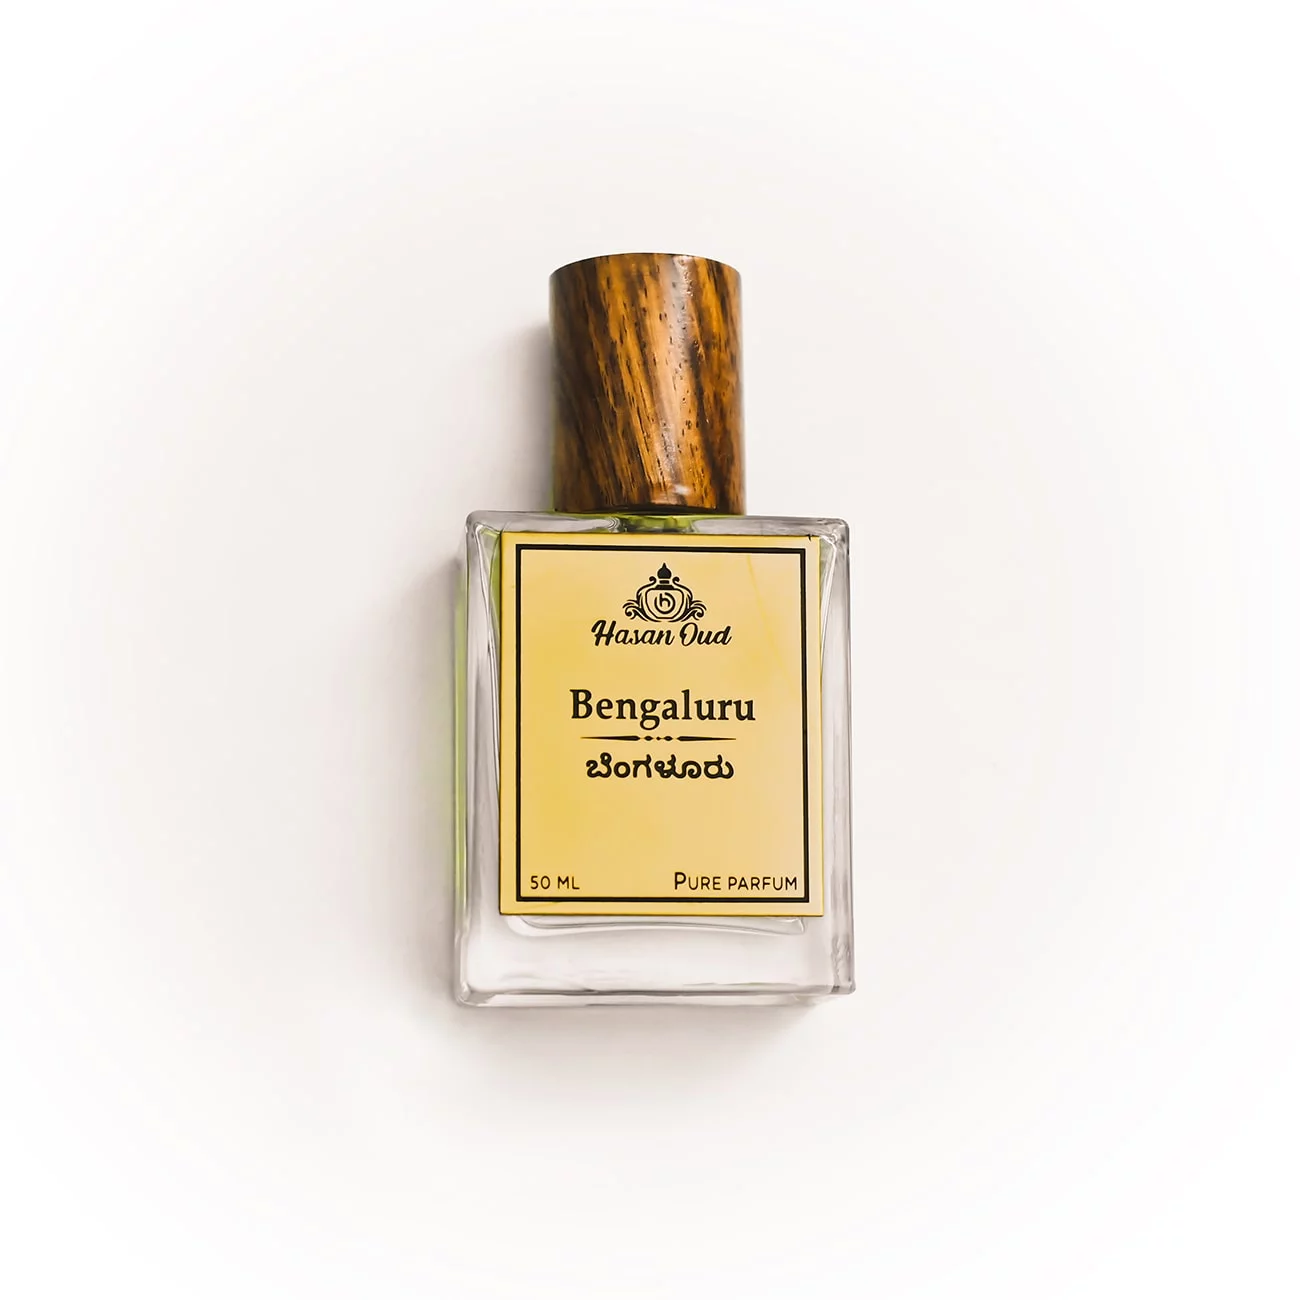 BENGALURU- Premium Fragrances 